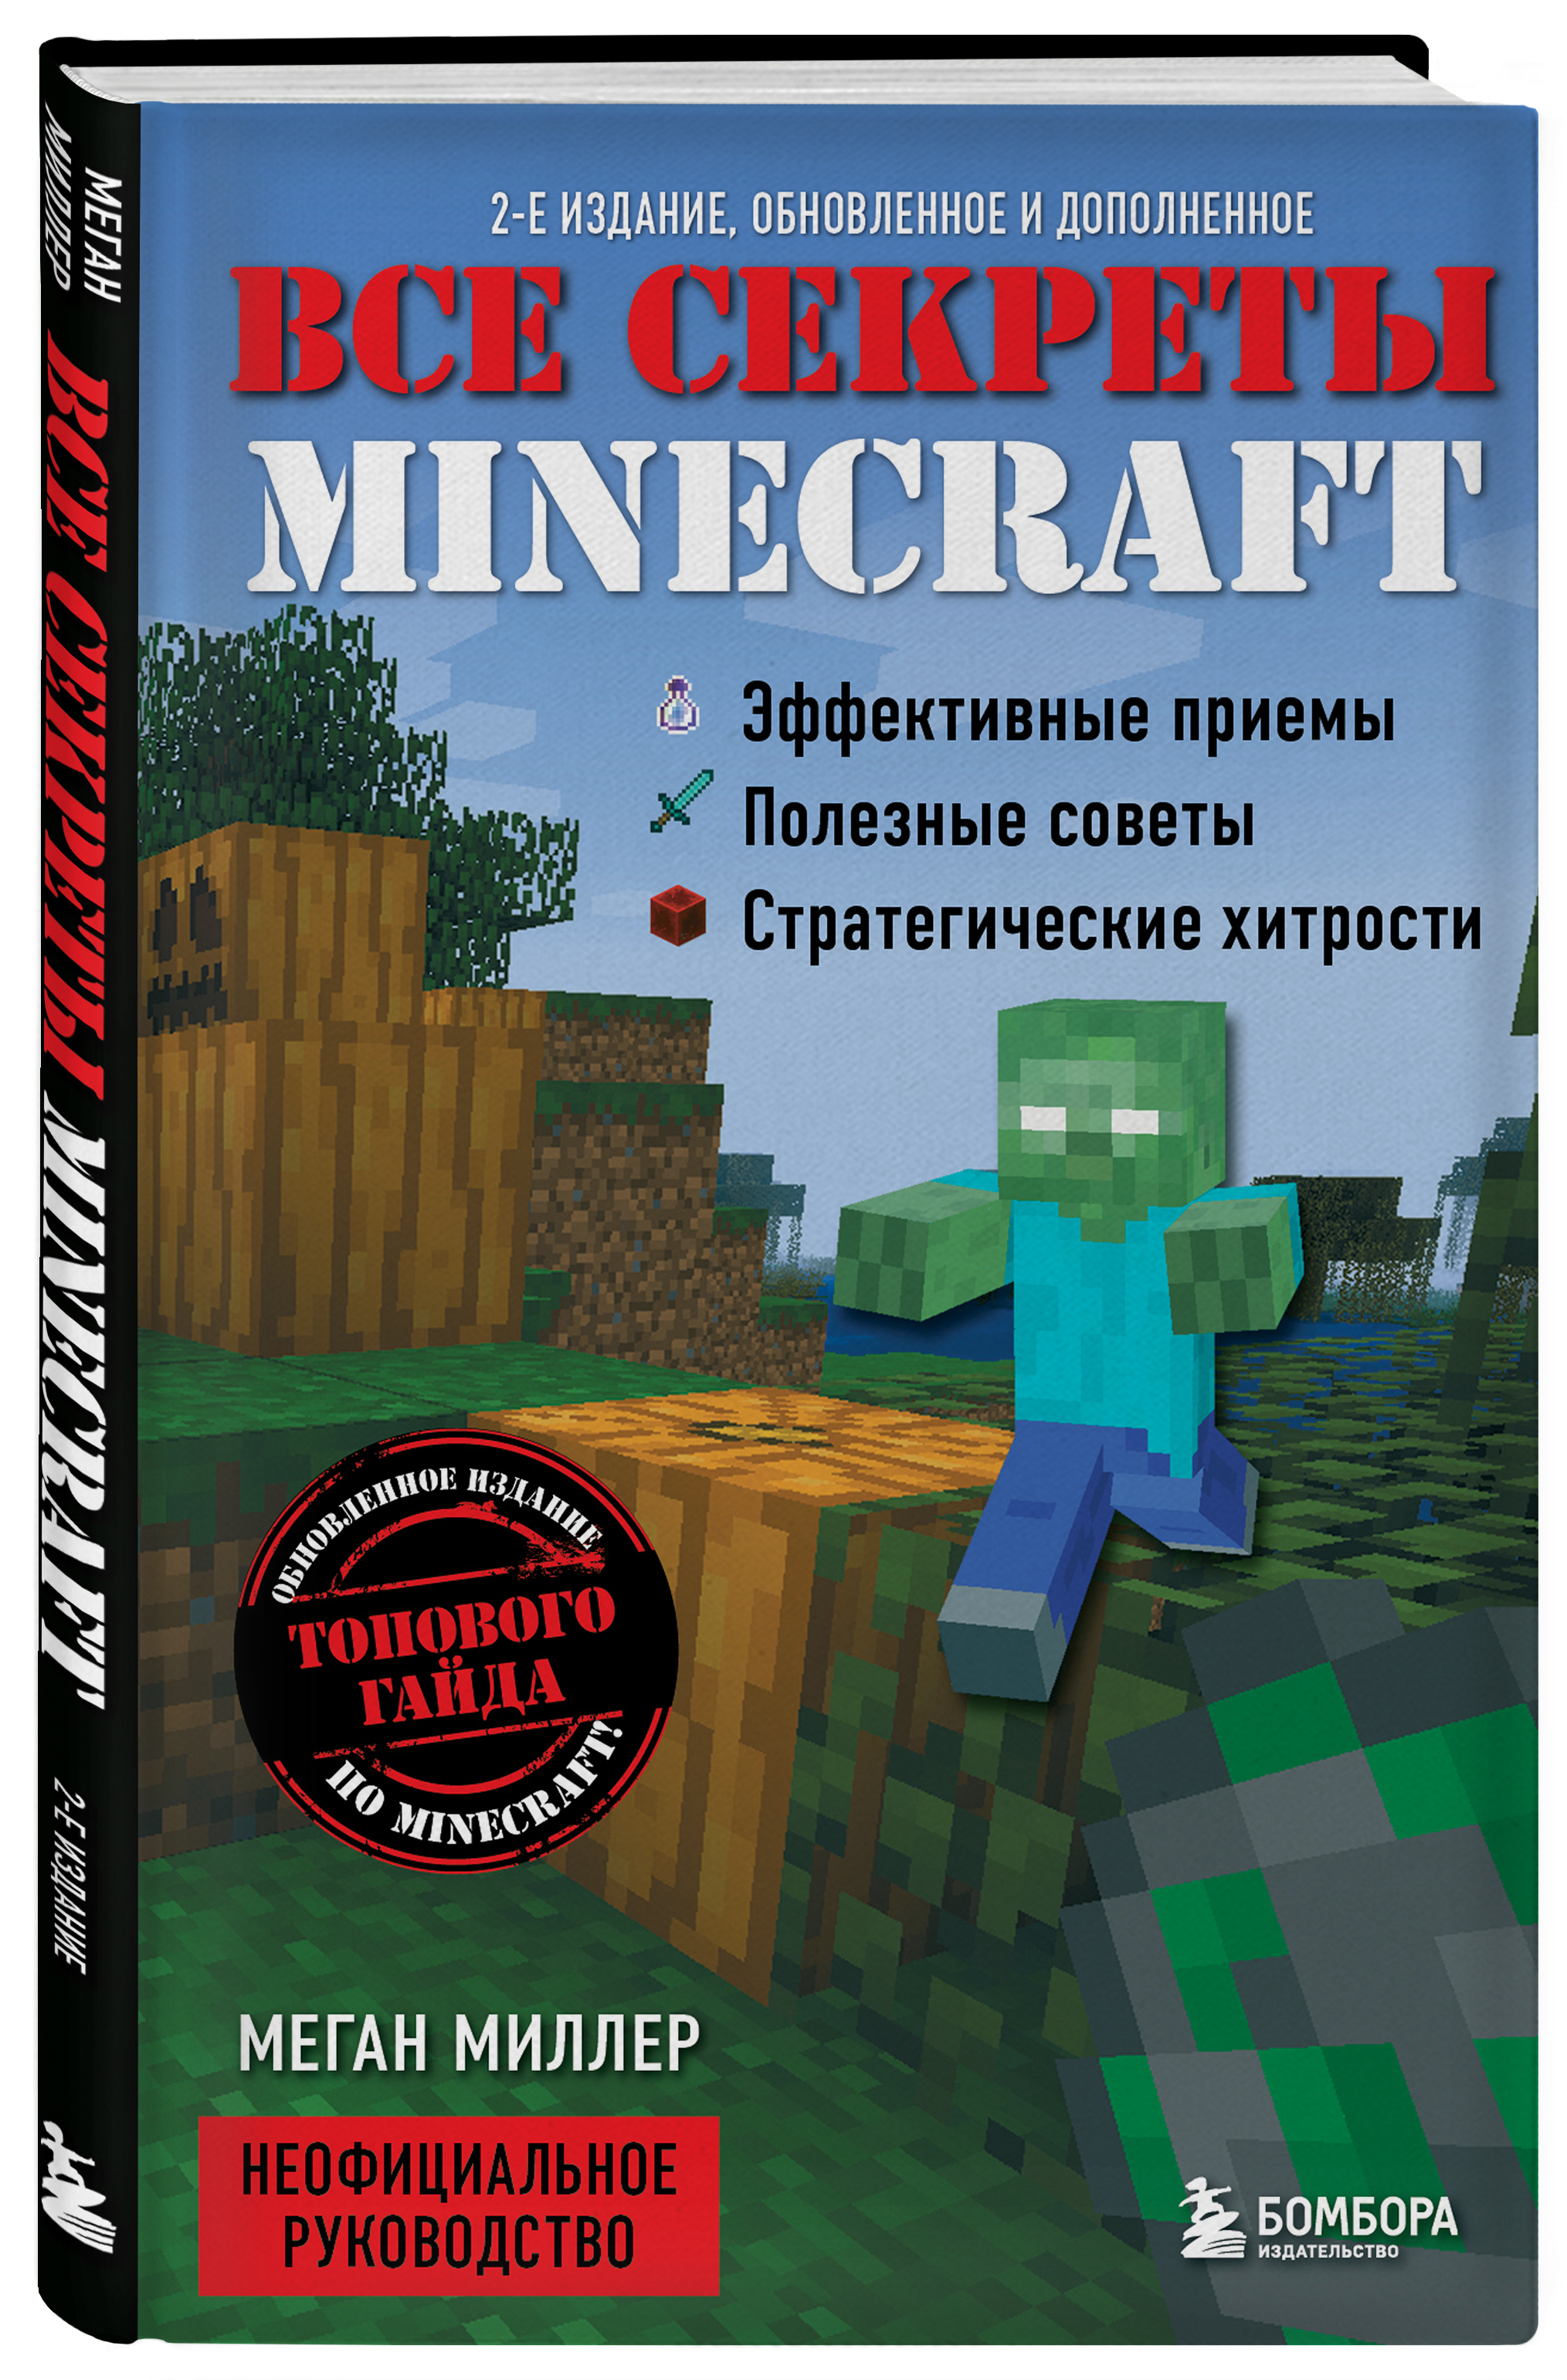 цена Все секреты Minecraft – 2-е издание